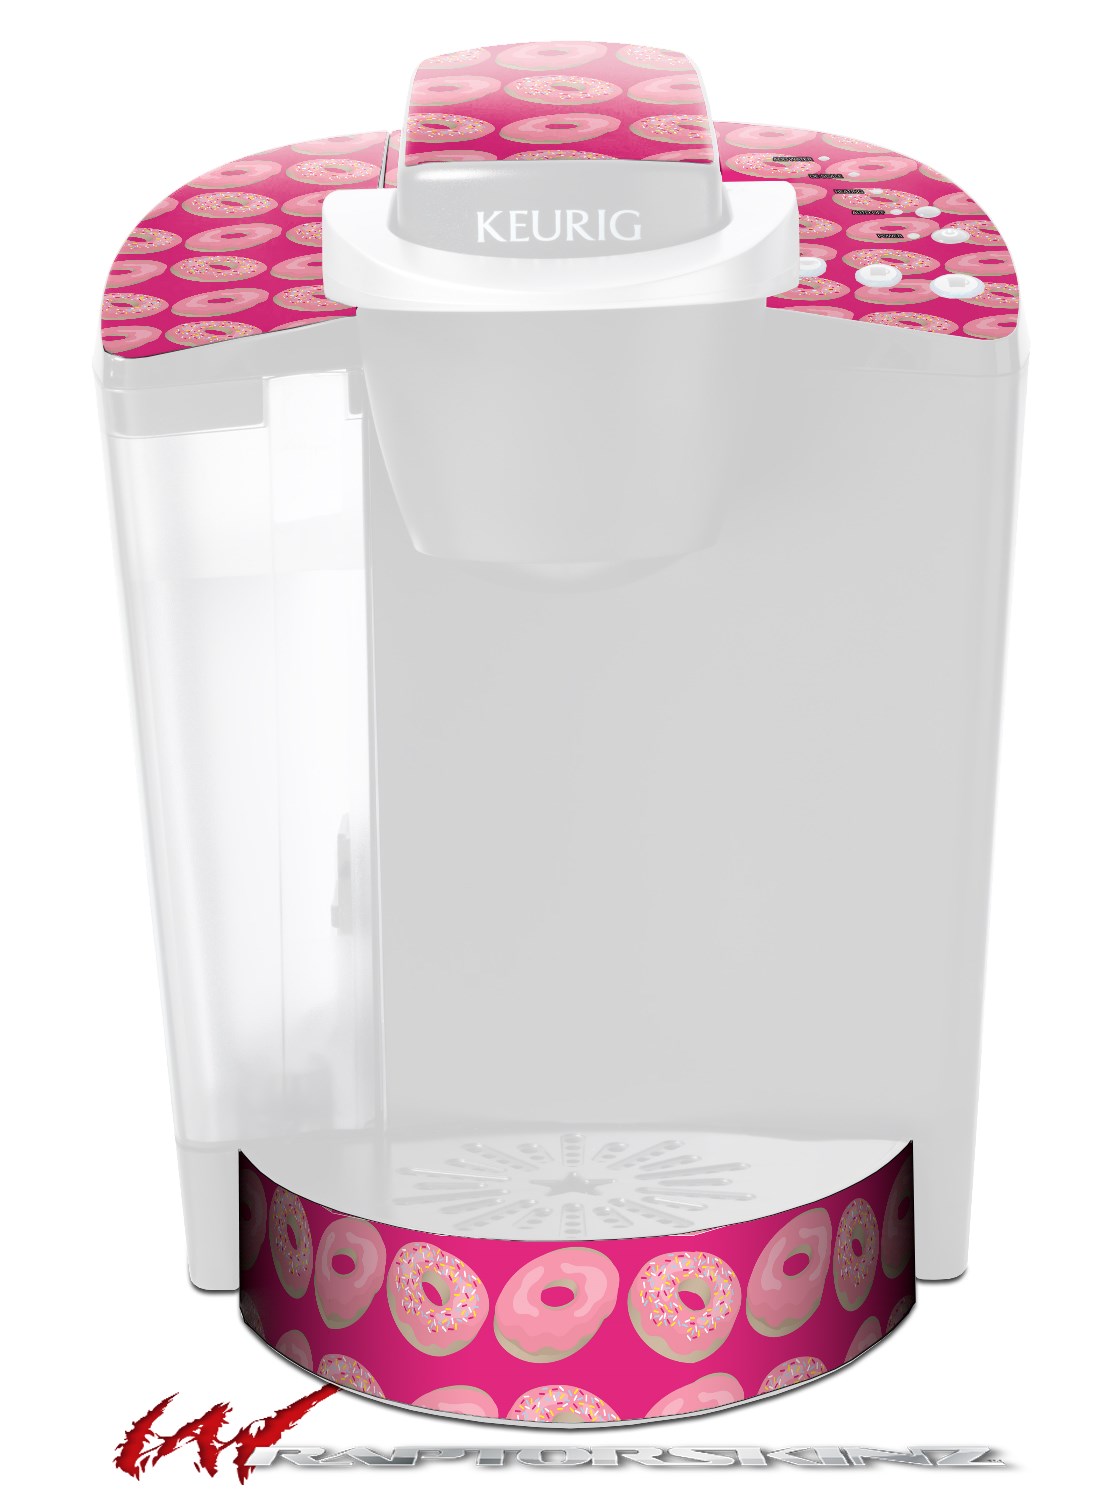 Keurig K40 Elite Coffee Makers Donuts Hot Pink Fuchsia